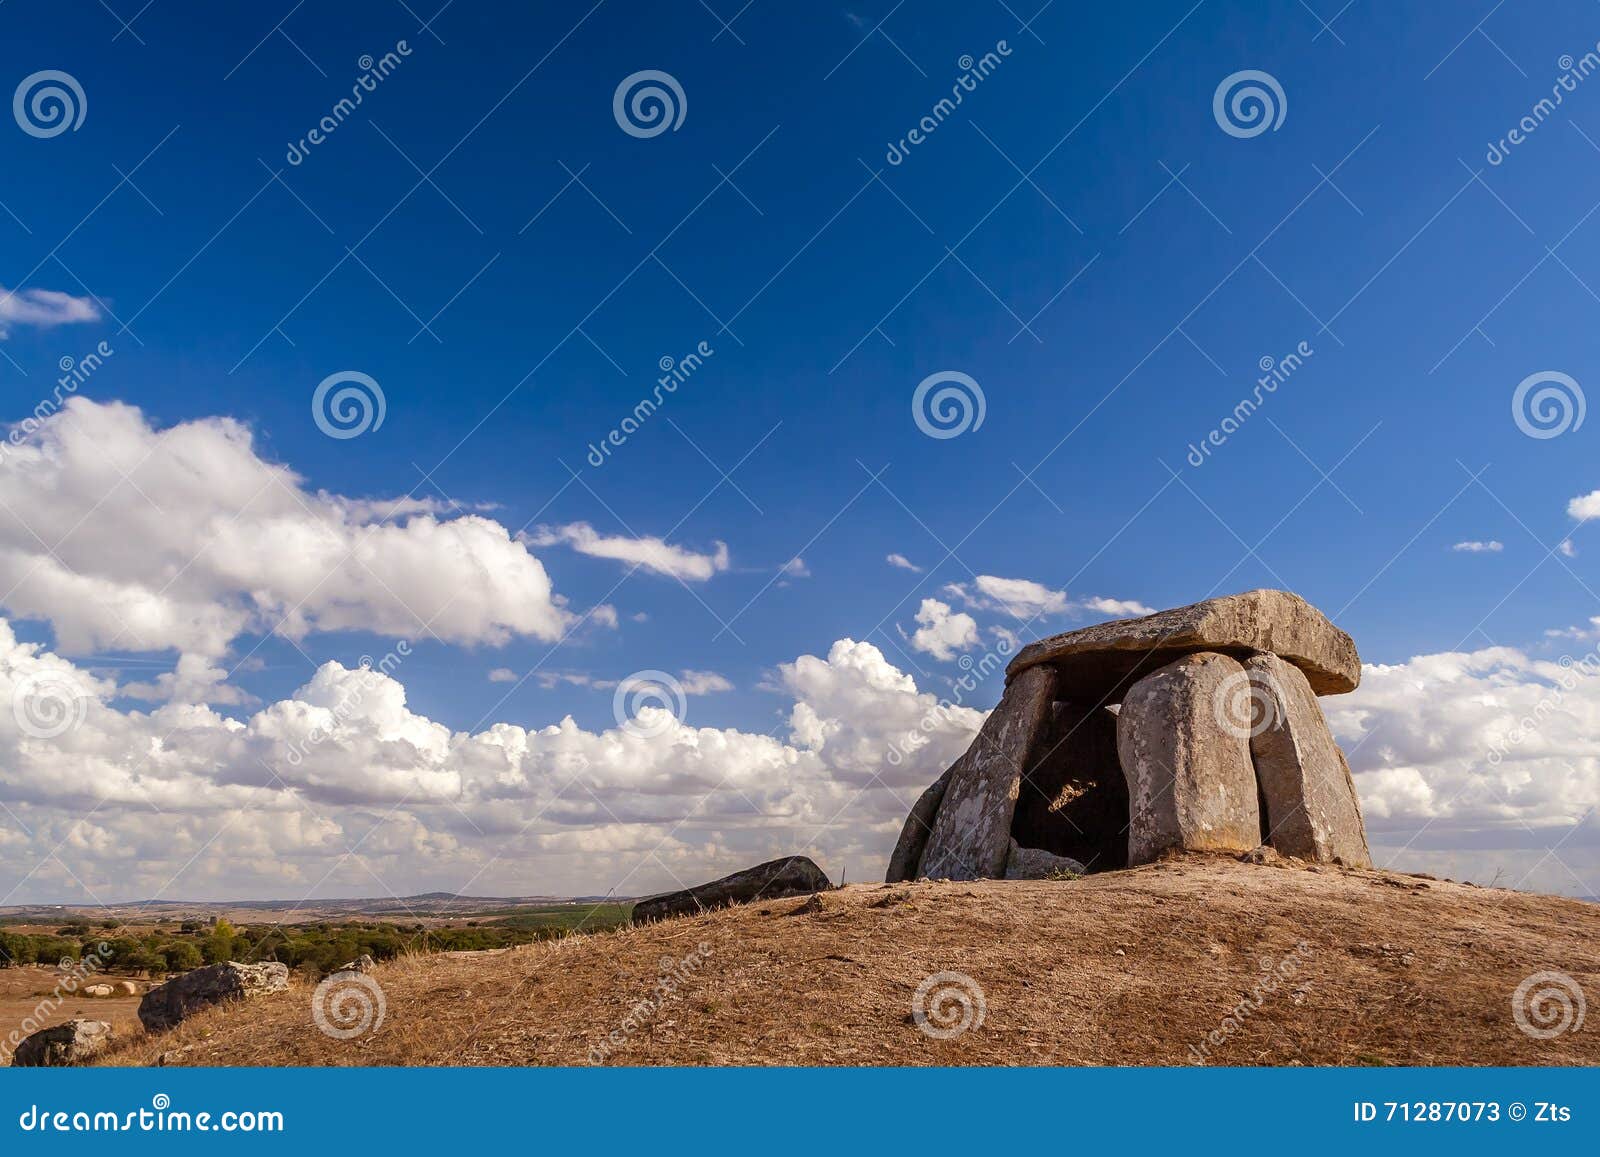 tapadao dolmen in crato, the second biggest in portugal.